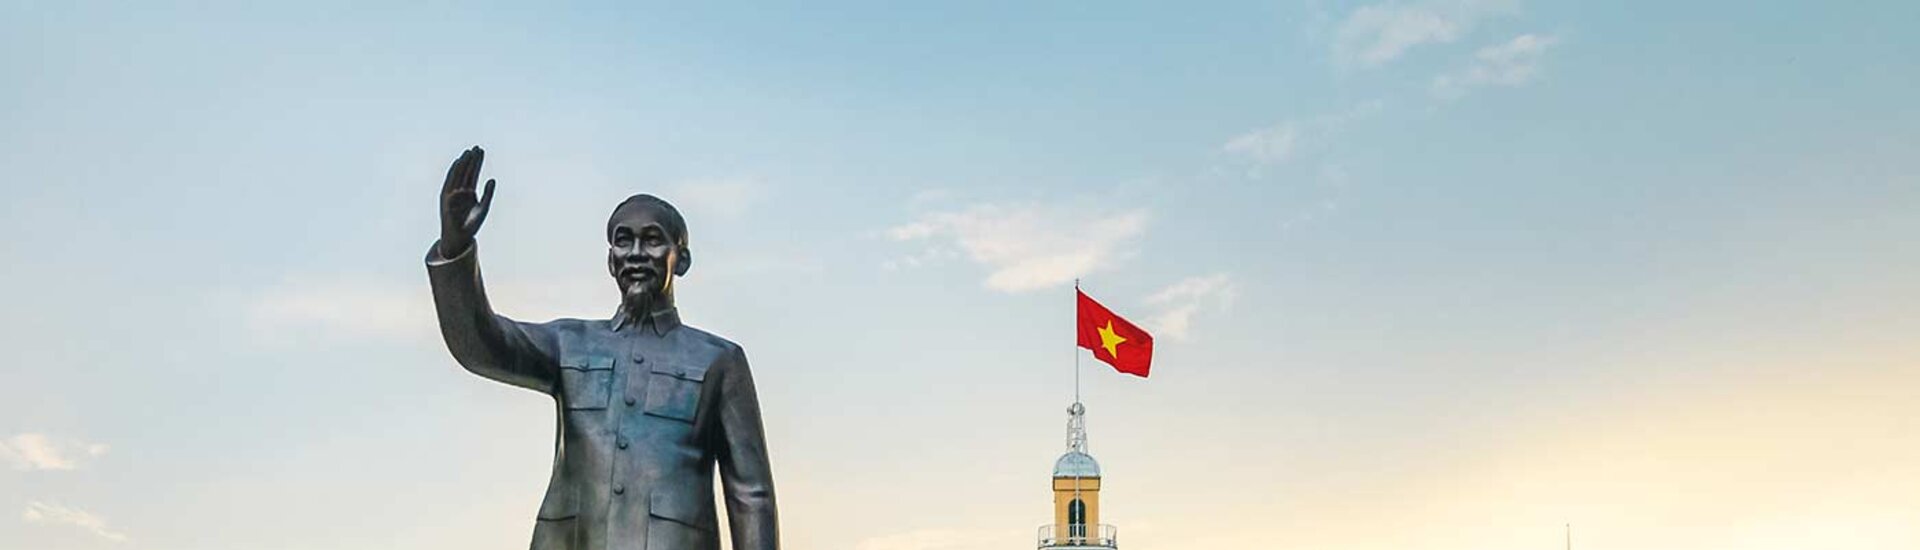 Statue in Saigon